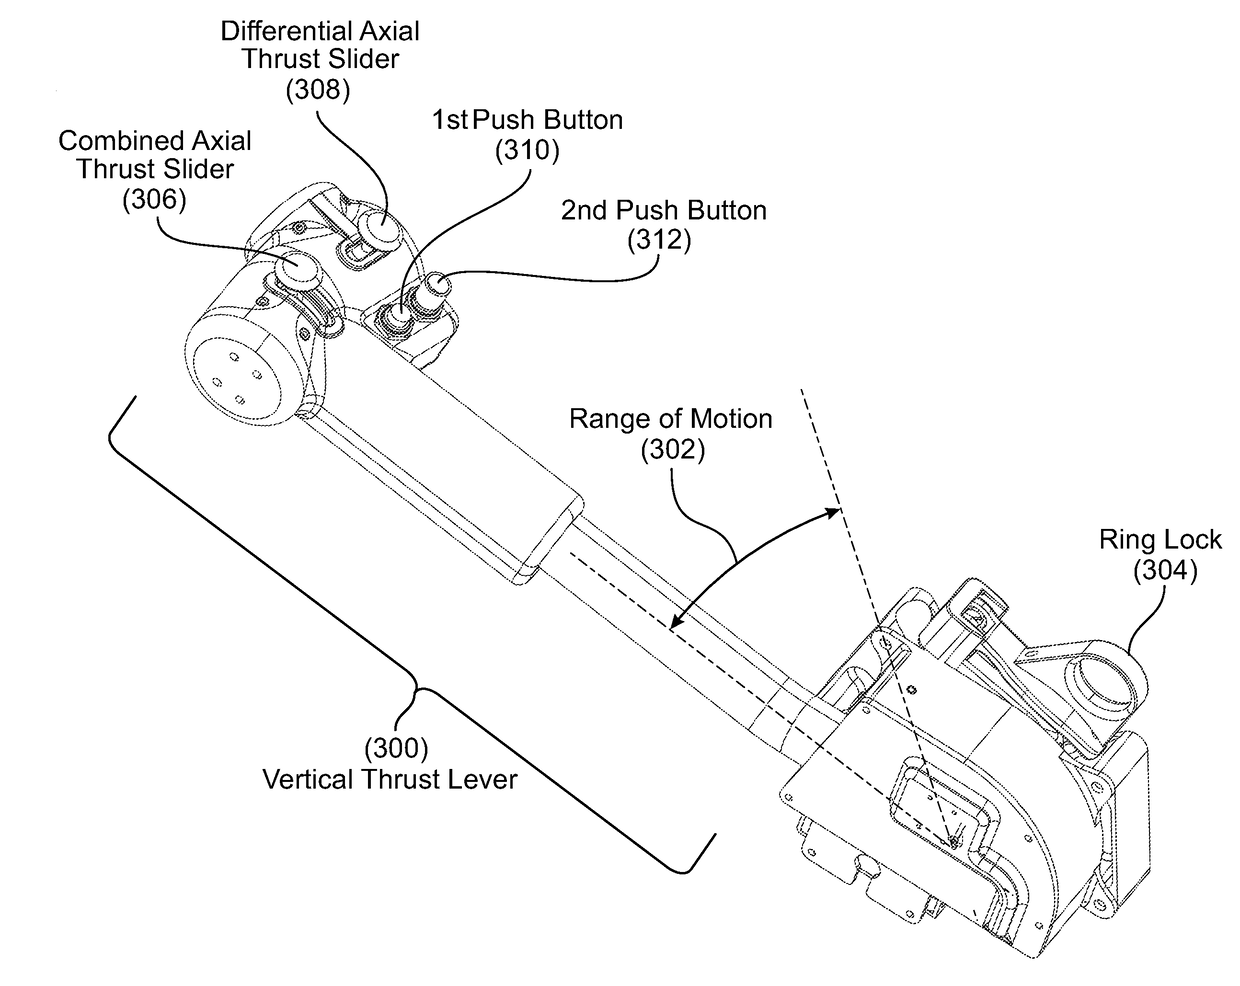 Vertical thrust lever